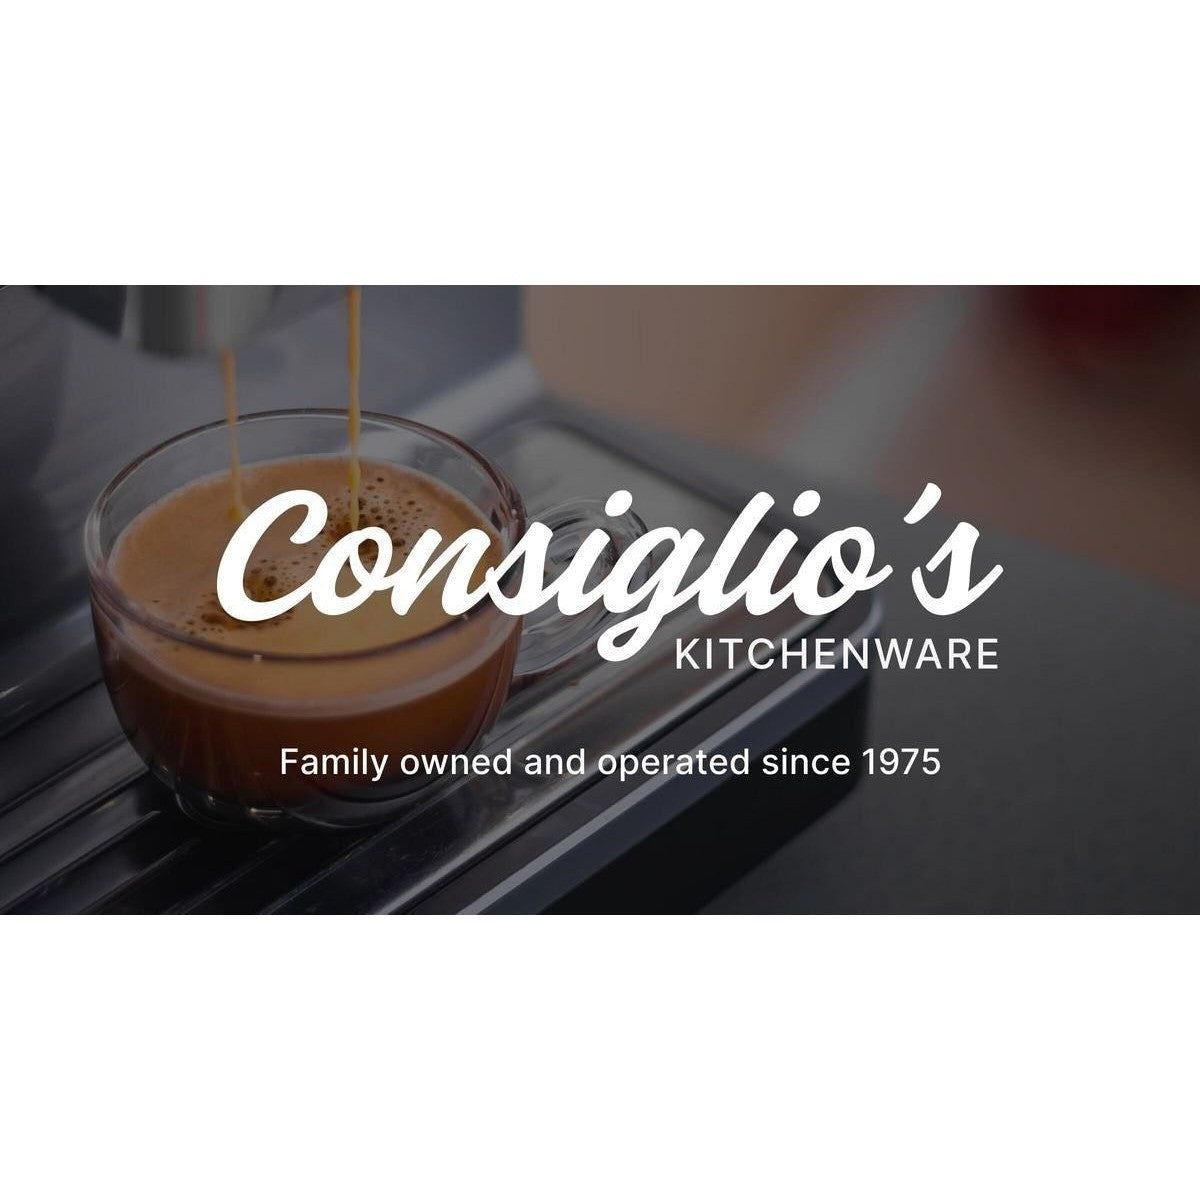 Consiglio's Kitchenware Family Run Since 1975!